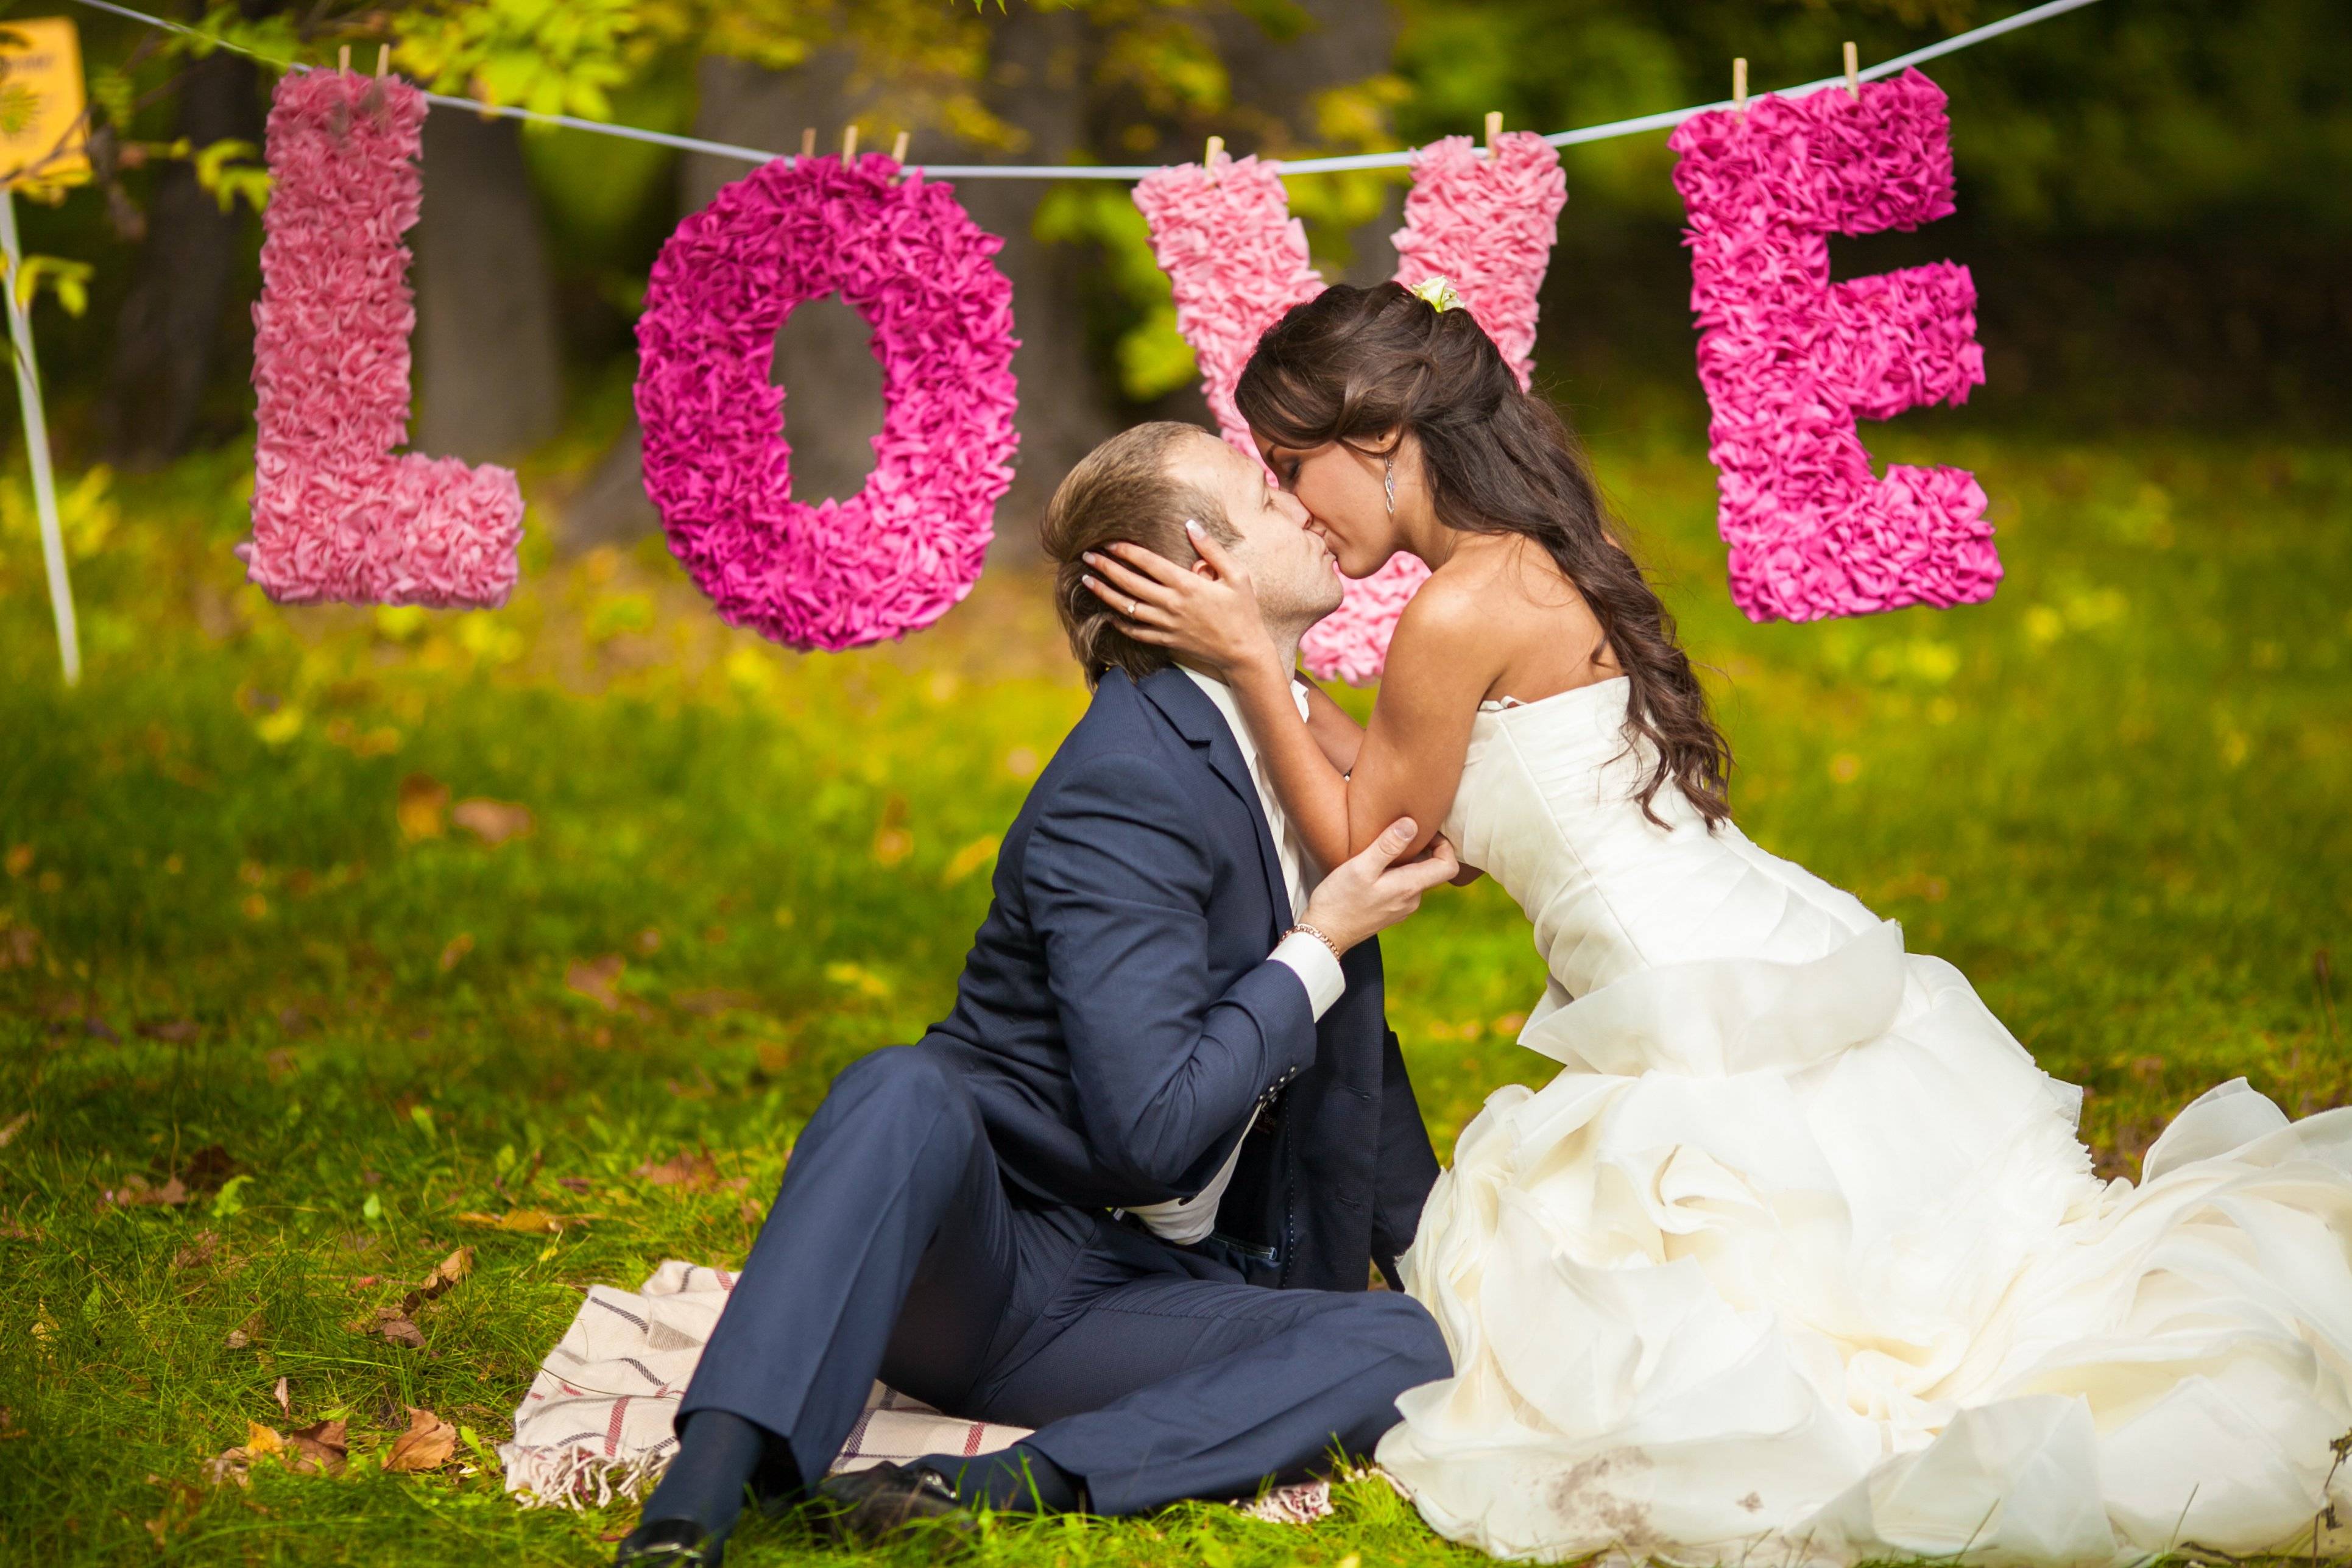 Буквы на свадьбу: зачем нужны и где их взять